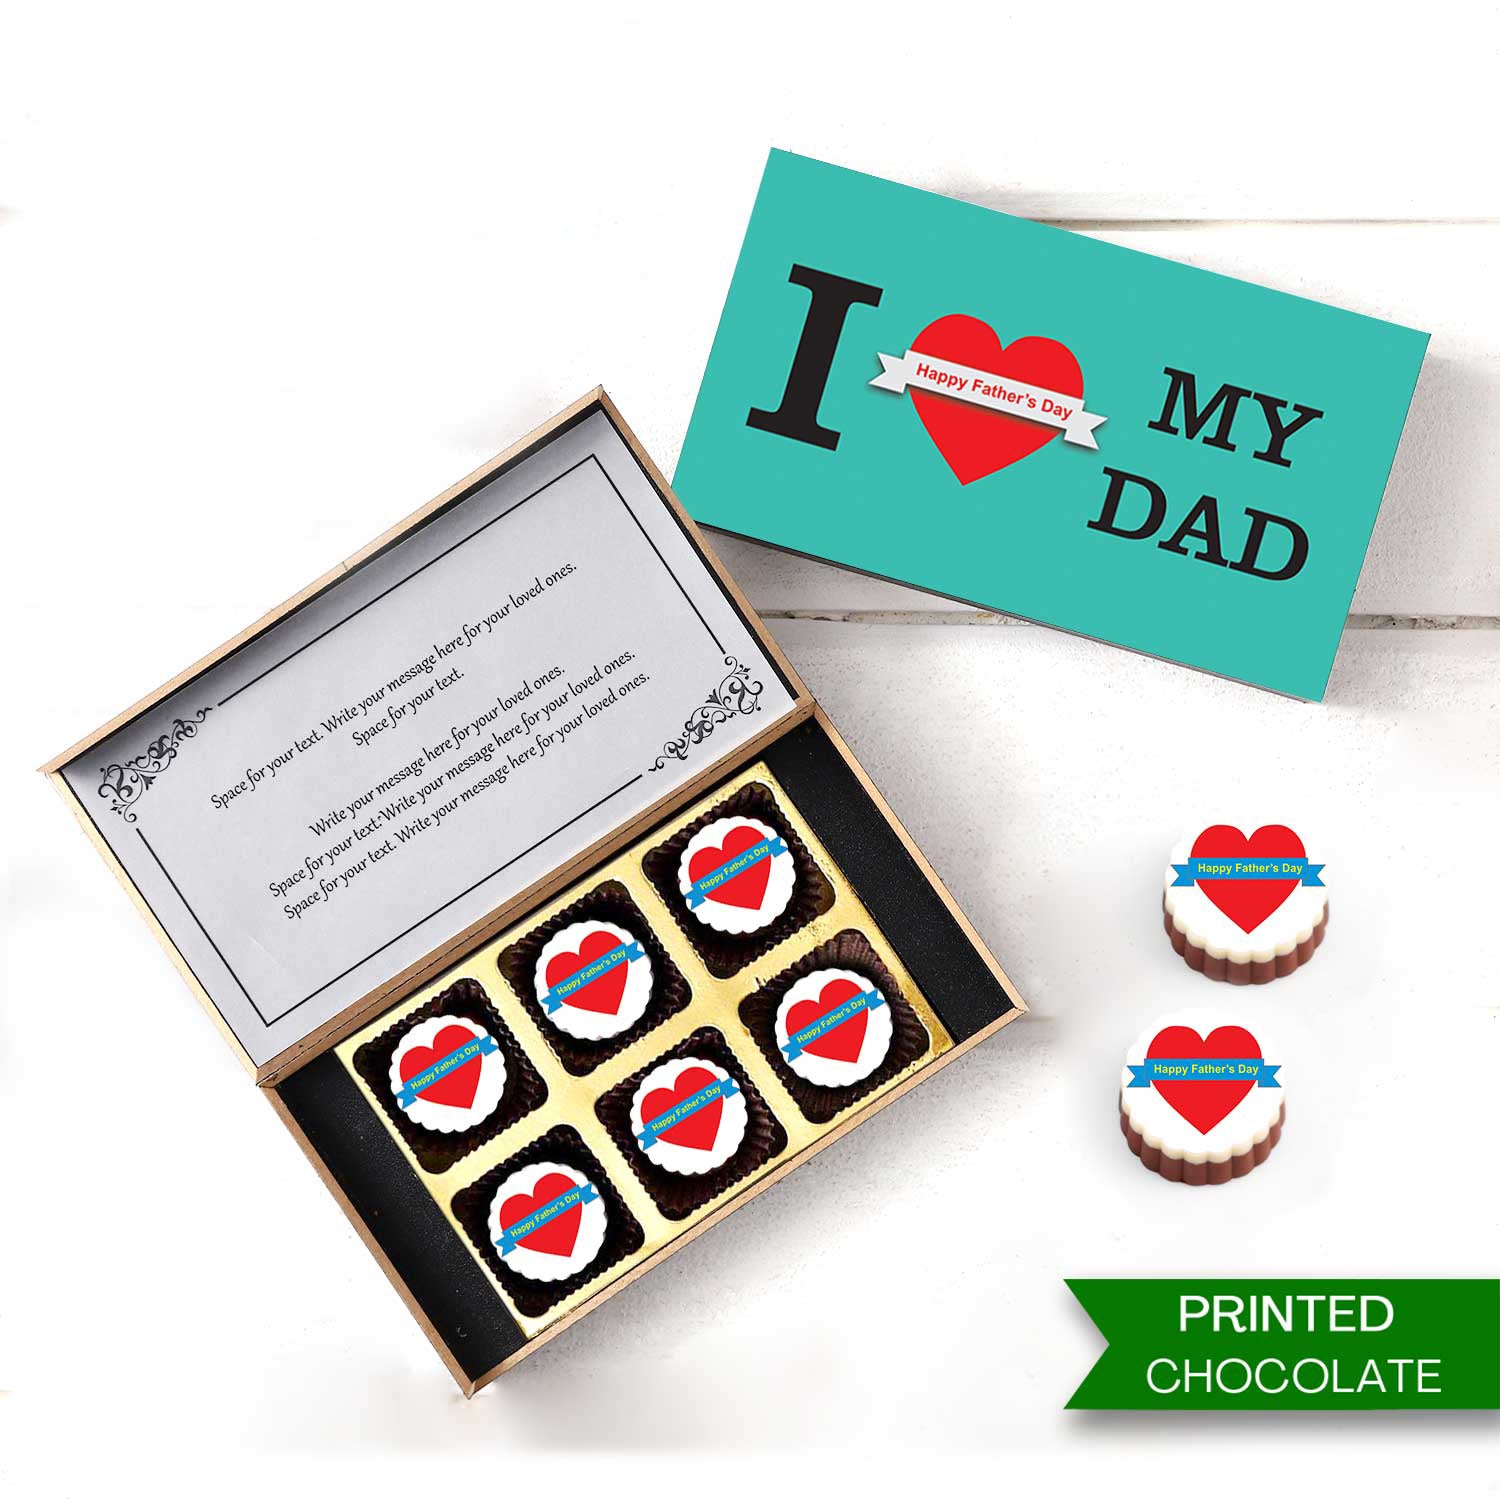 CHOCOLATE GIFT SWEET HAMPER CADBURY NESTLE 21 BAR PERSONALISED BOX BIRTHDAY  | eBay